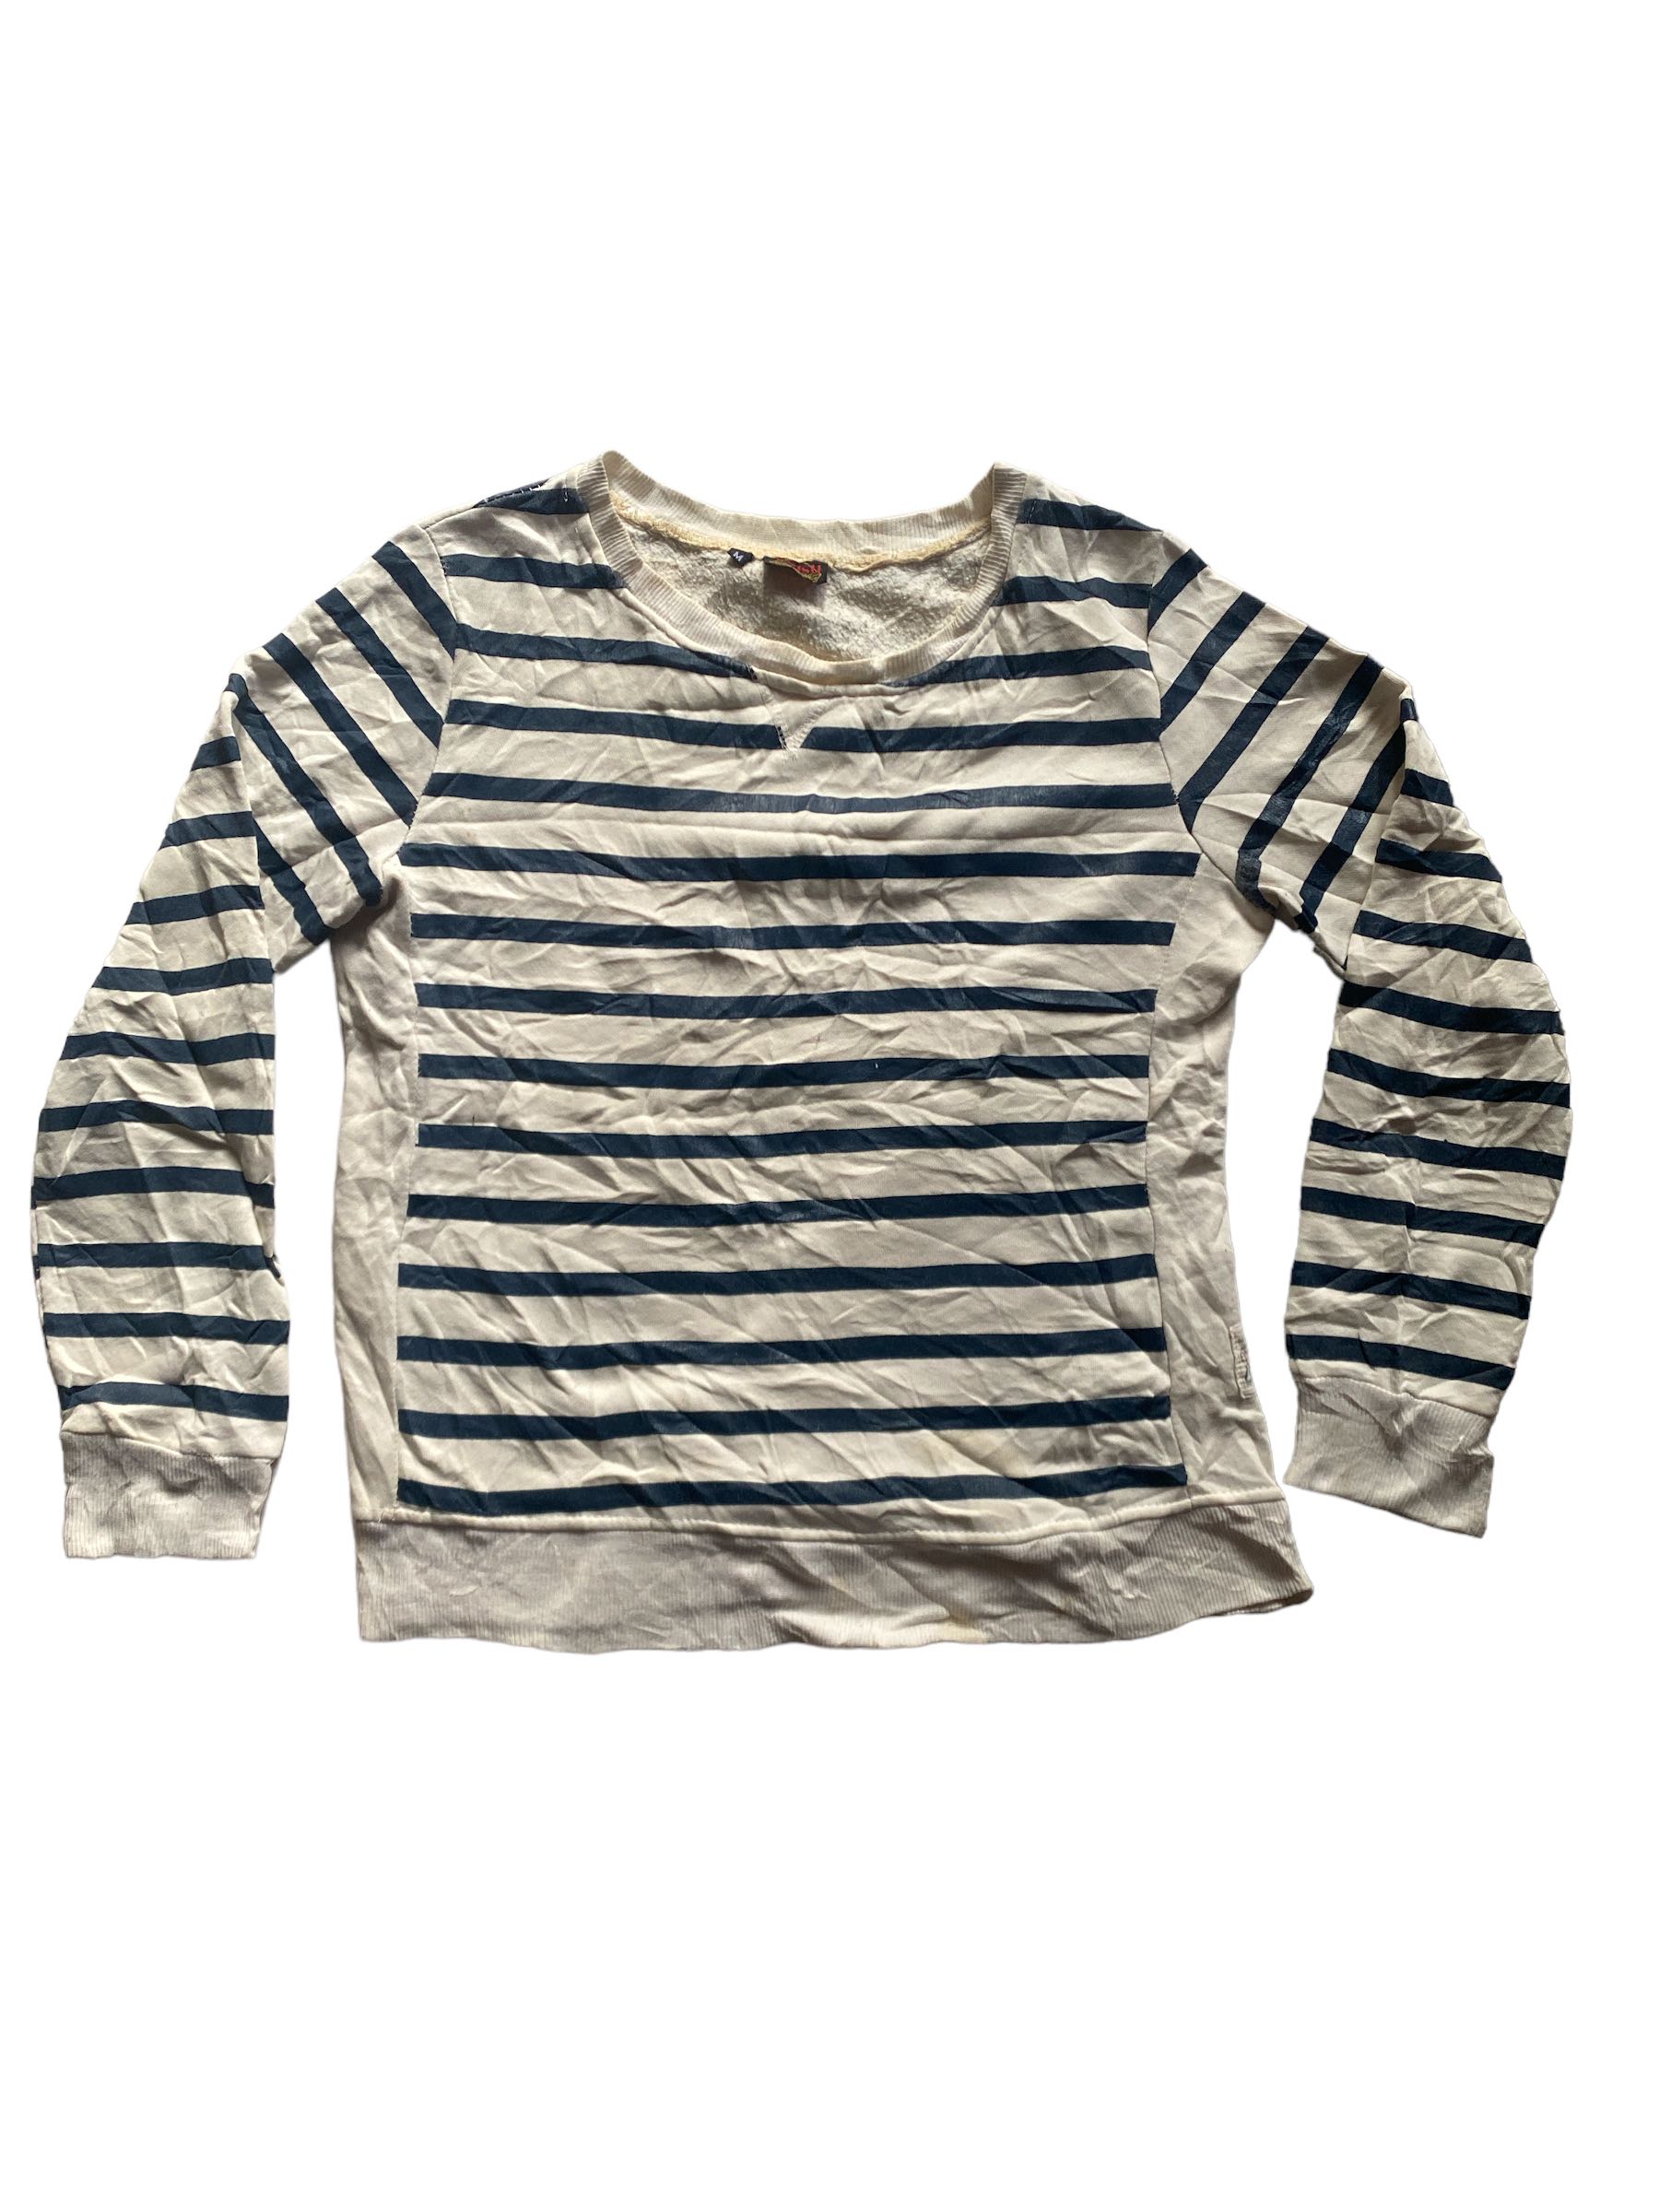 Vintage Evisu Sweatshirt - 7